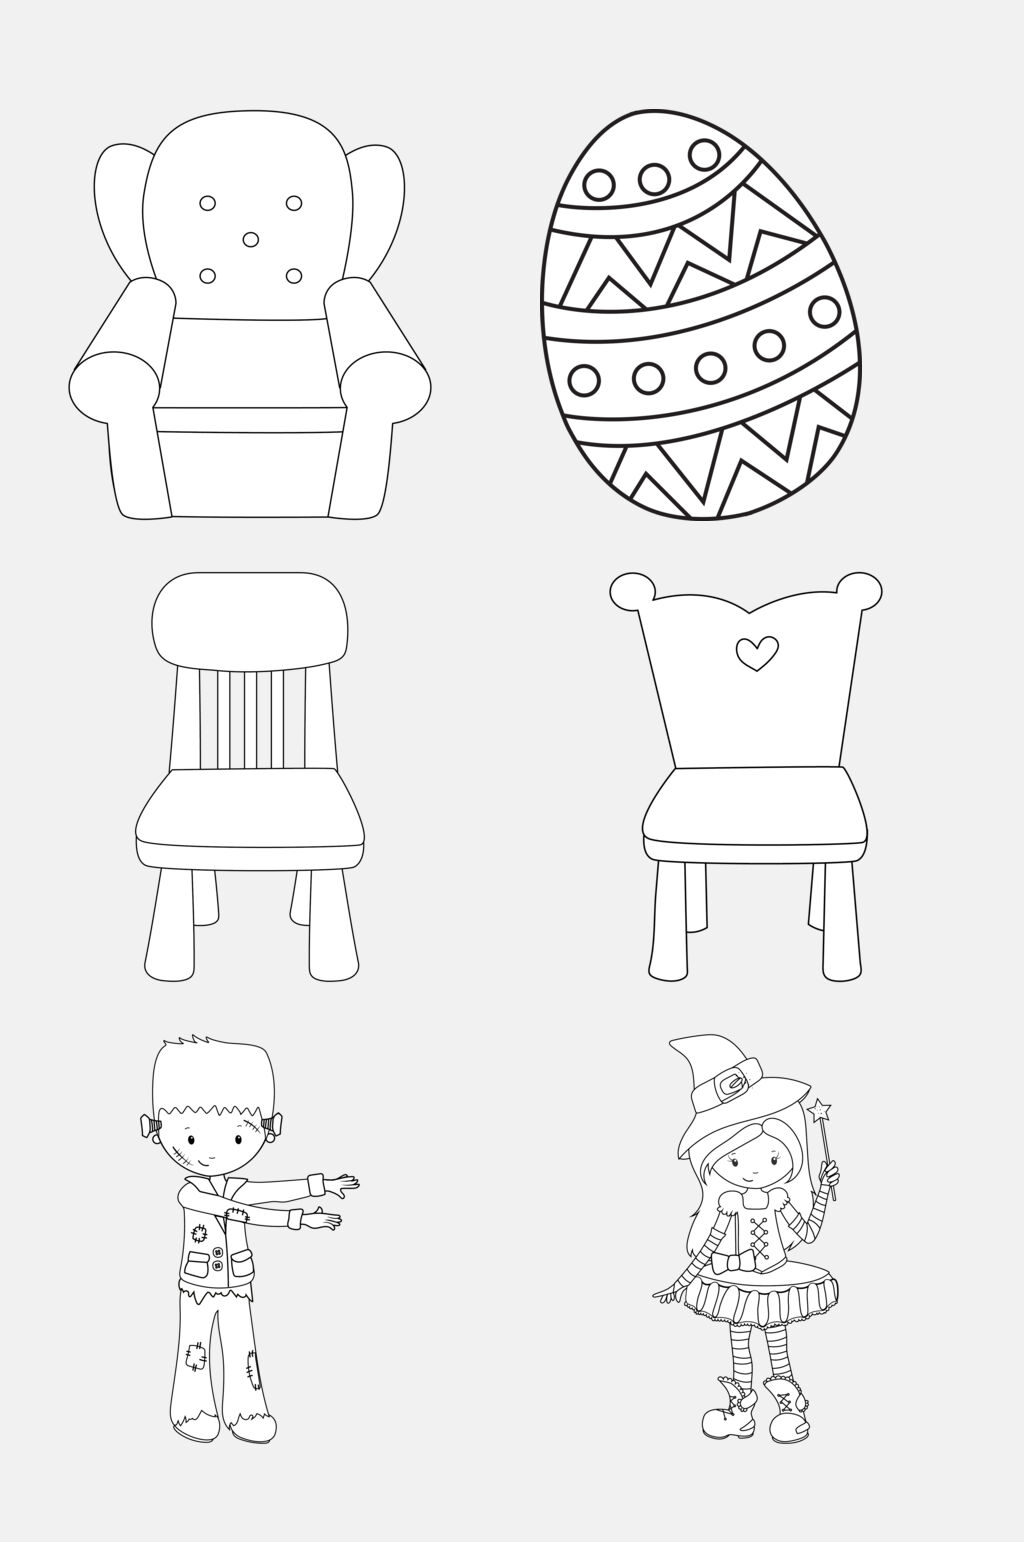 有创意的椅子简笔画图片